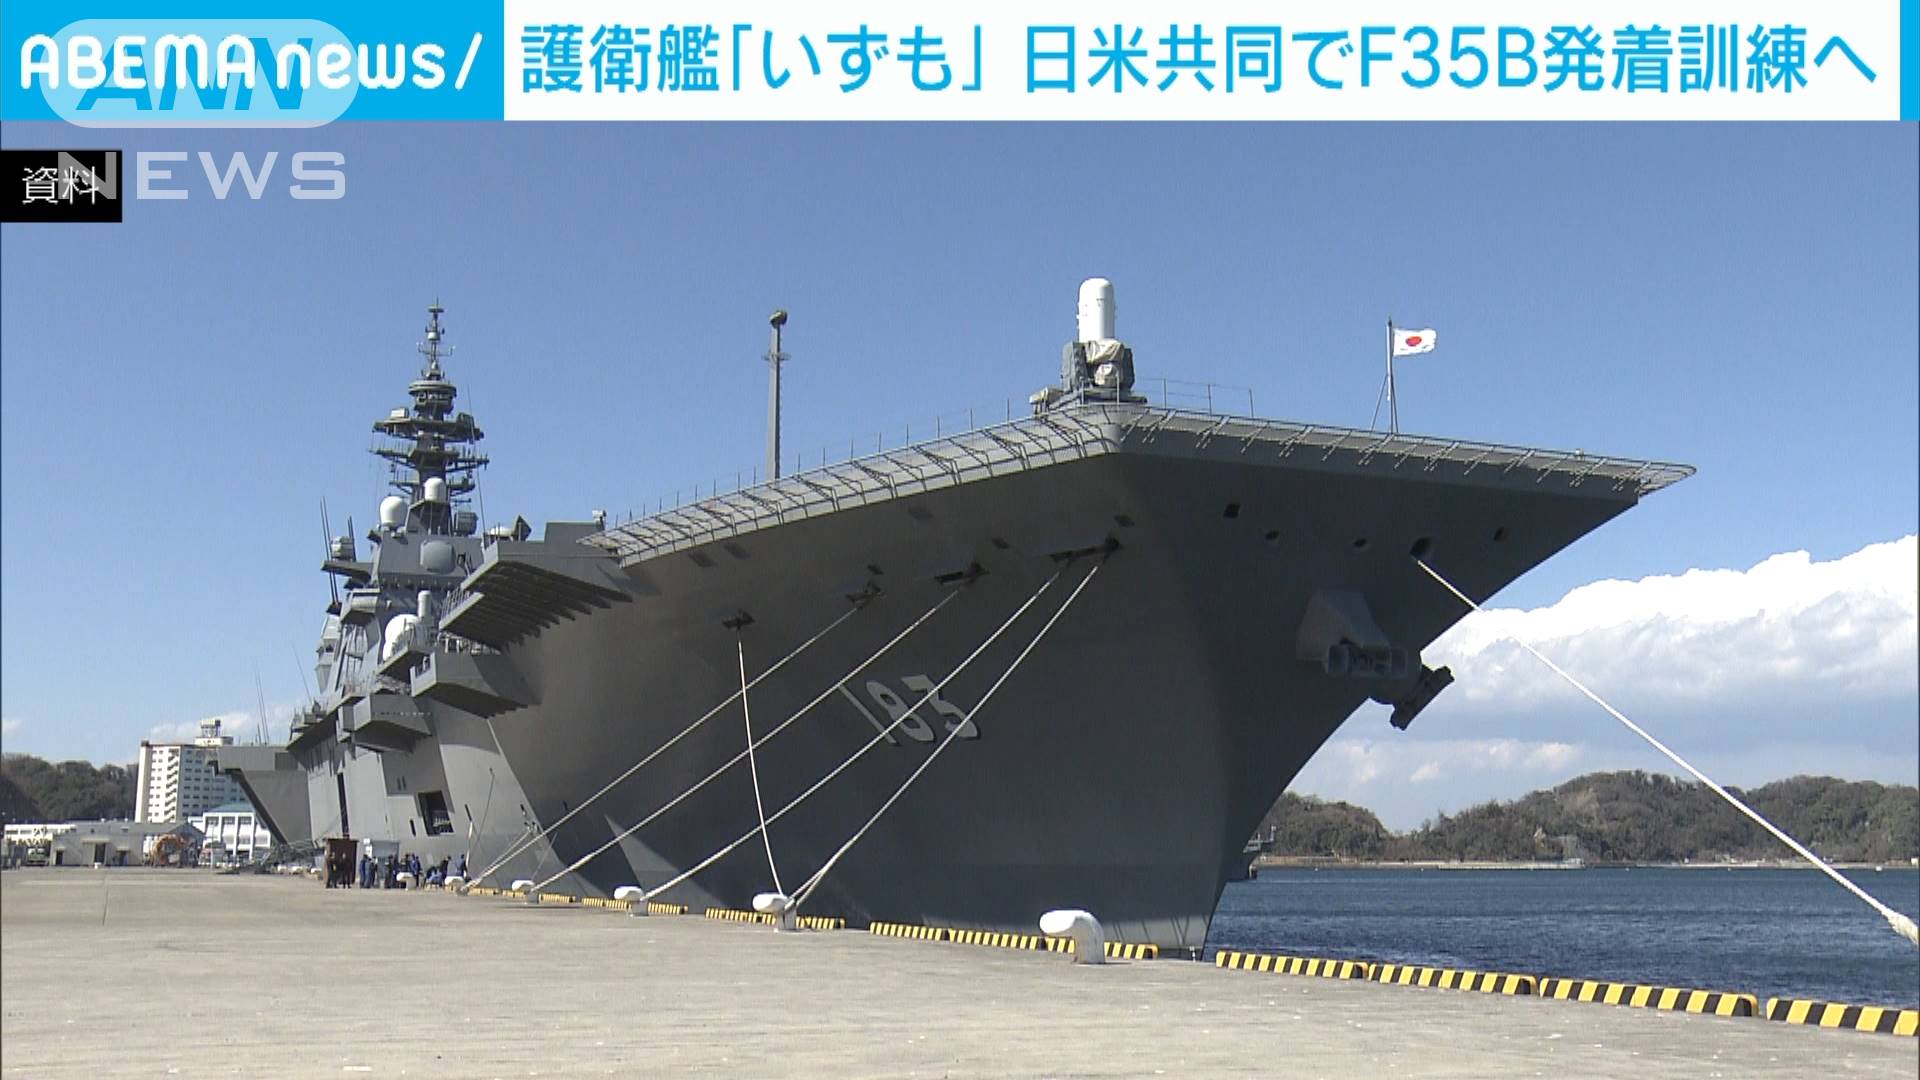 護衛艦 いずも でf35bステルス機が離着陸訓練へ テレ朝news テレビ朝日のニュースサイト